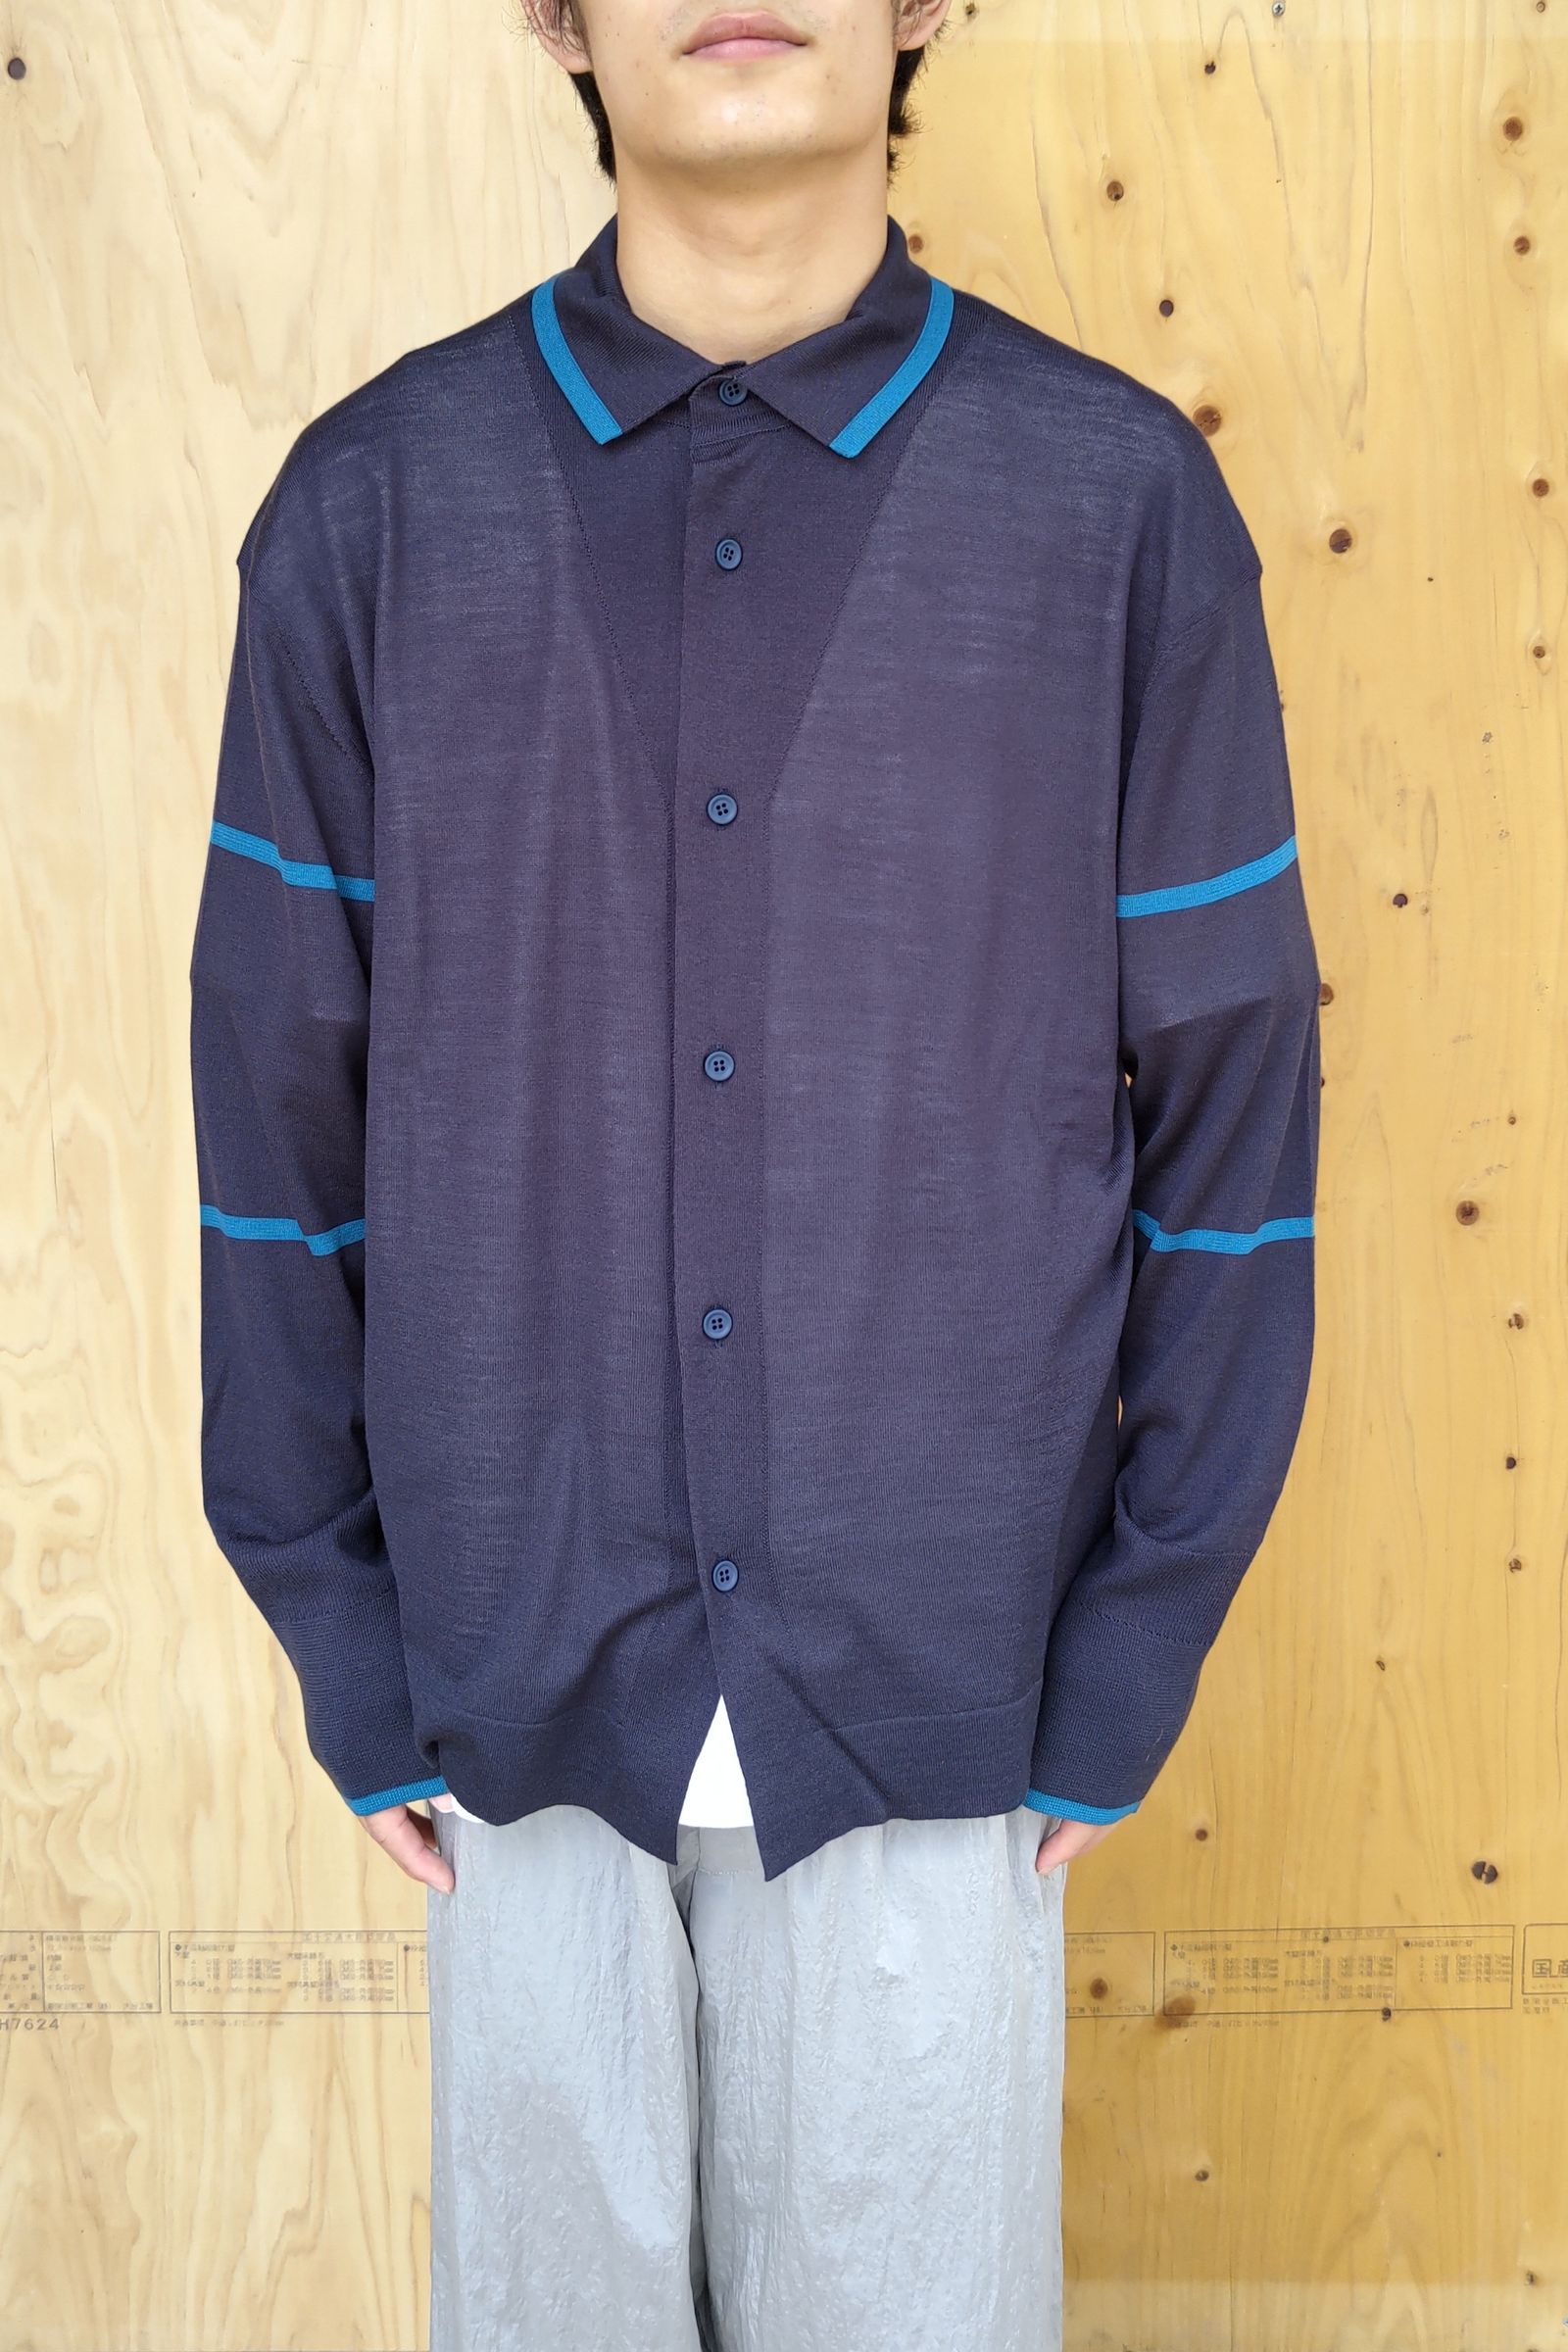 CFCL - wool high gauge shirt 1 - navy-teal - 22aw men | asterisk